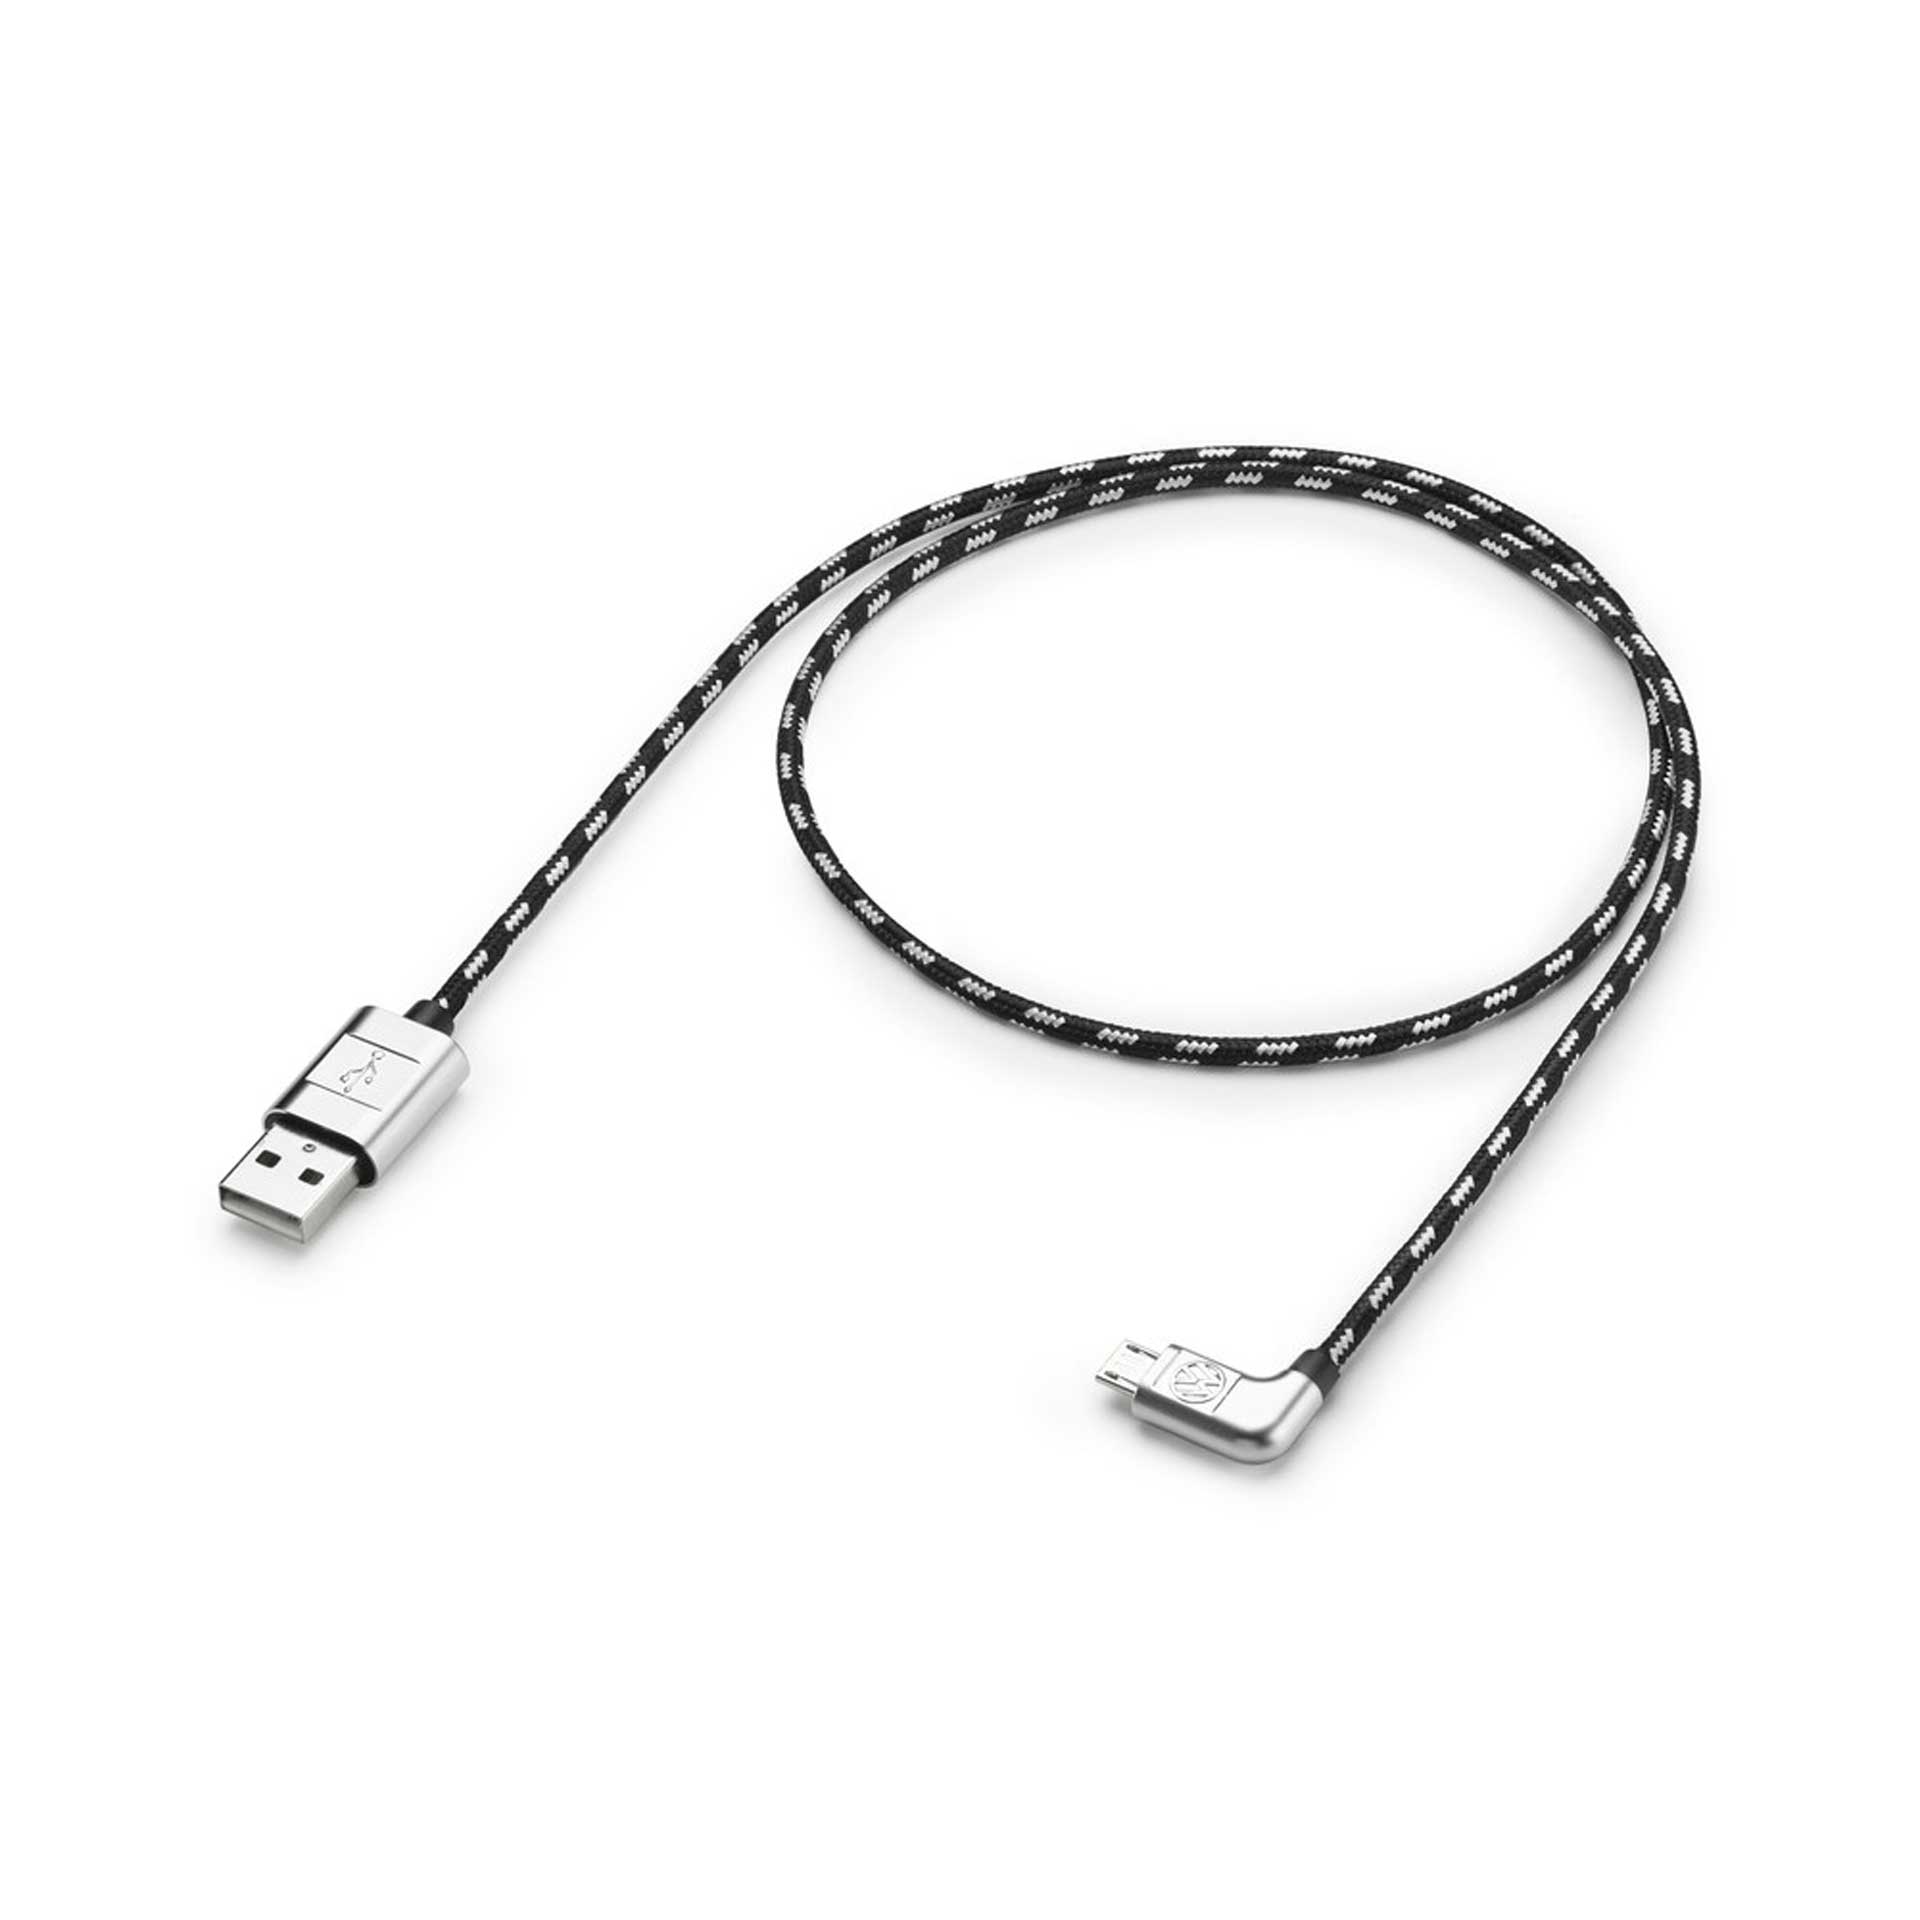 Volkswagen Anschlusskabel Ladekabel USB-C auf Micro-USB 70 cm 000051446AF